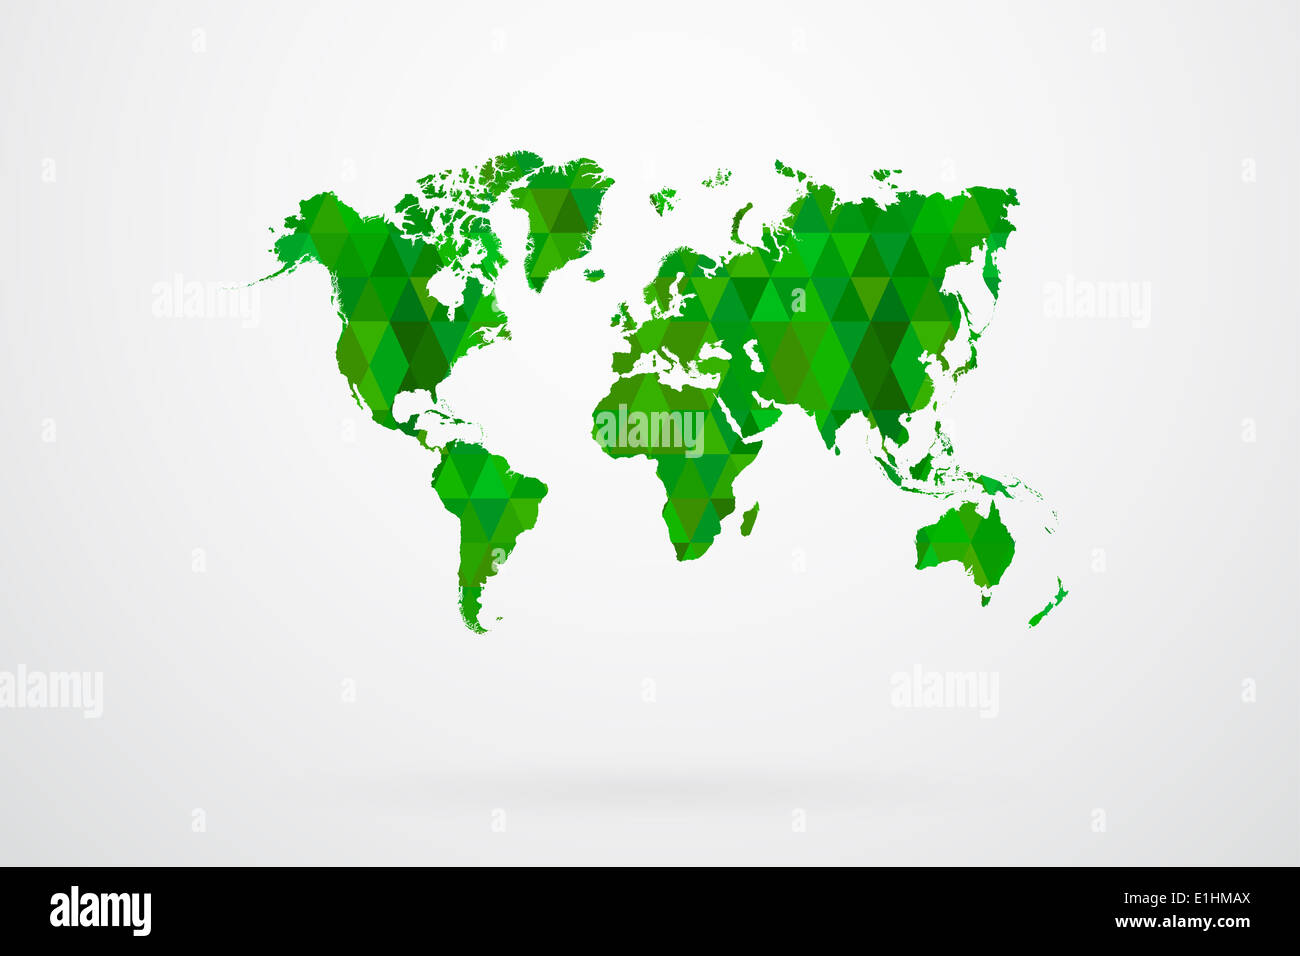 Вектор карта зеленая.